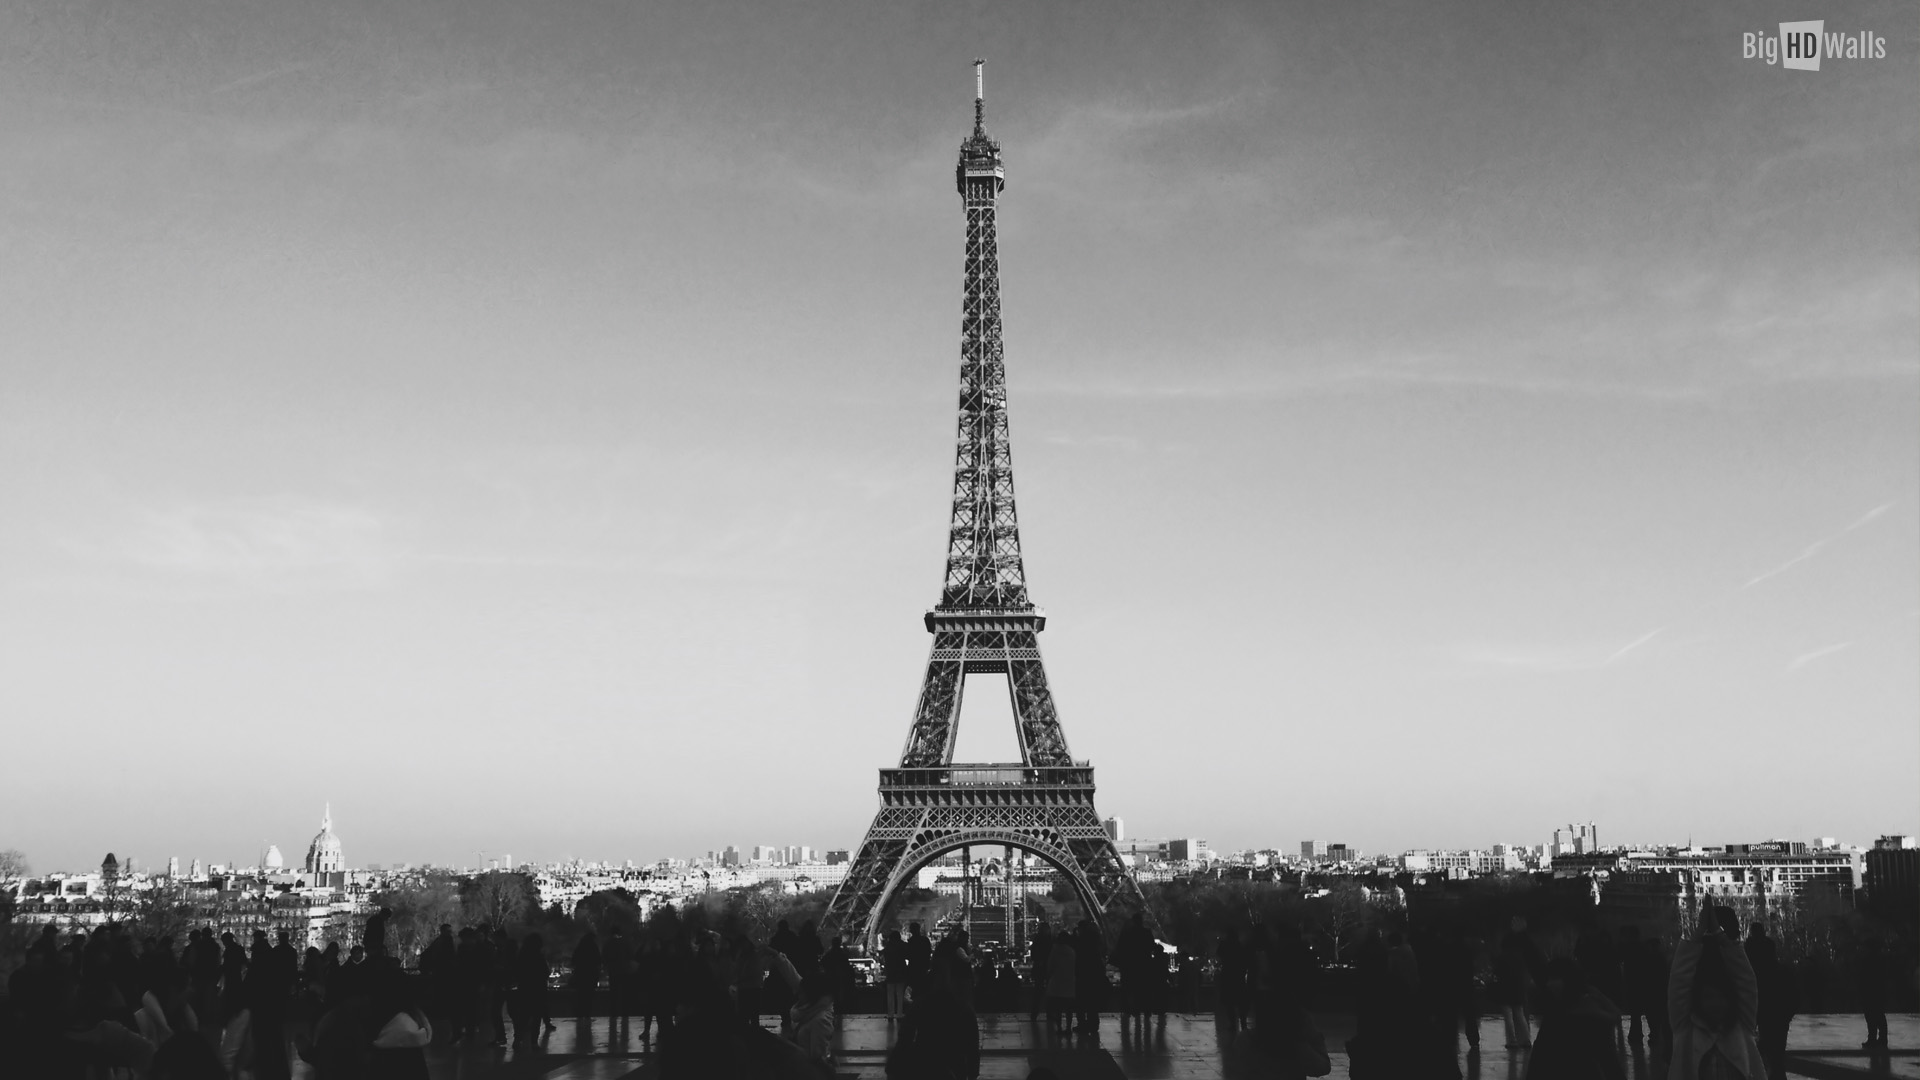 The Eiffel Tower HD Wallpaper BigHDwalls